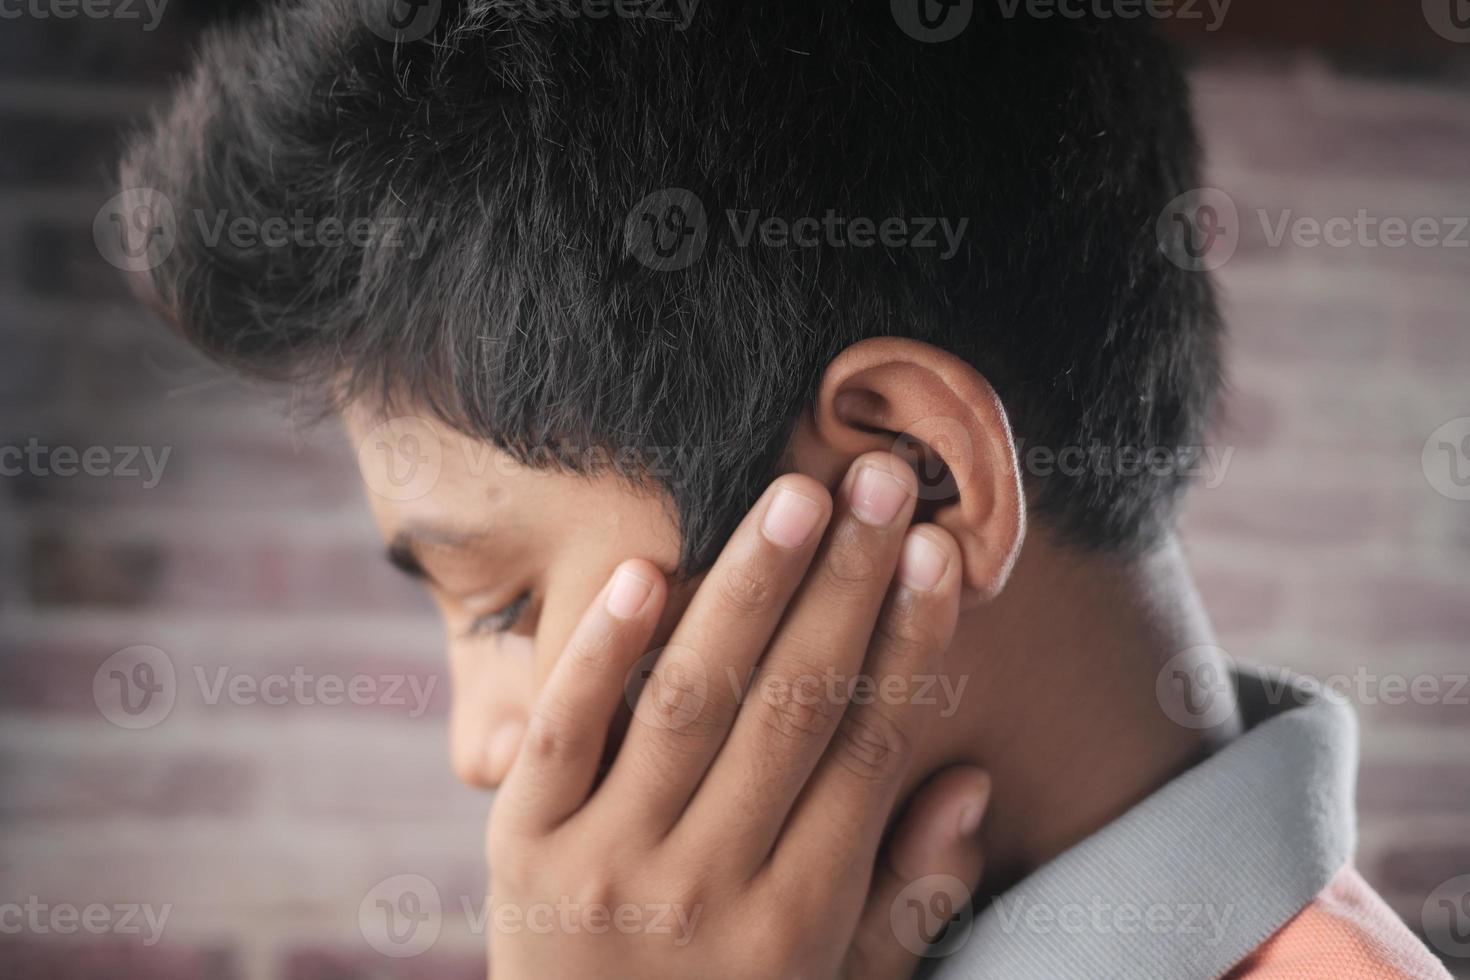 tonårspojke som har ont i öronen när han rör vid sitt smärtsamma öra, foto